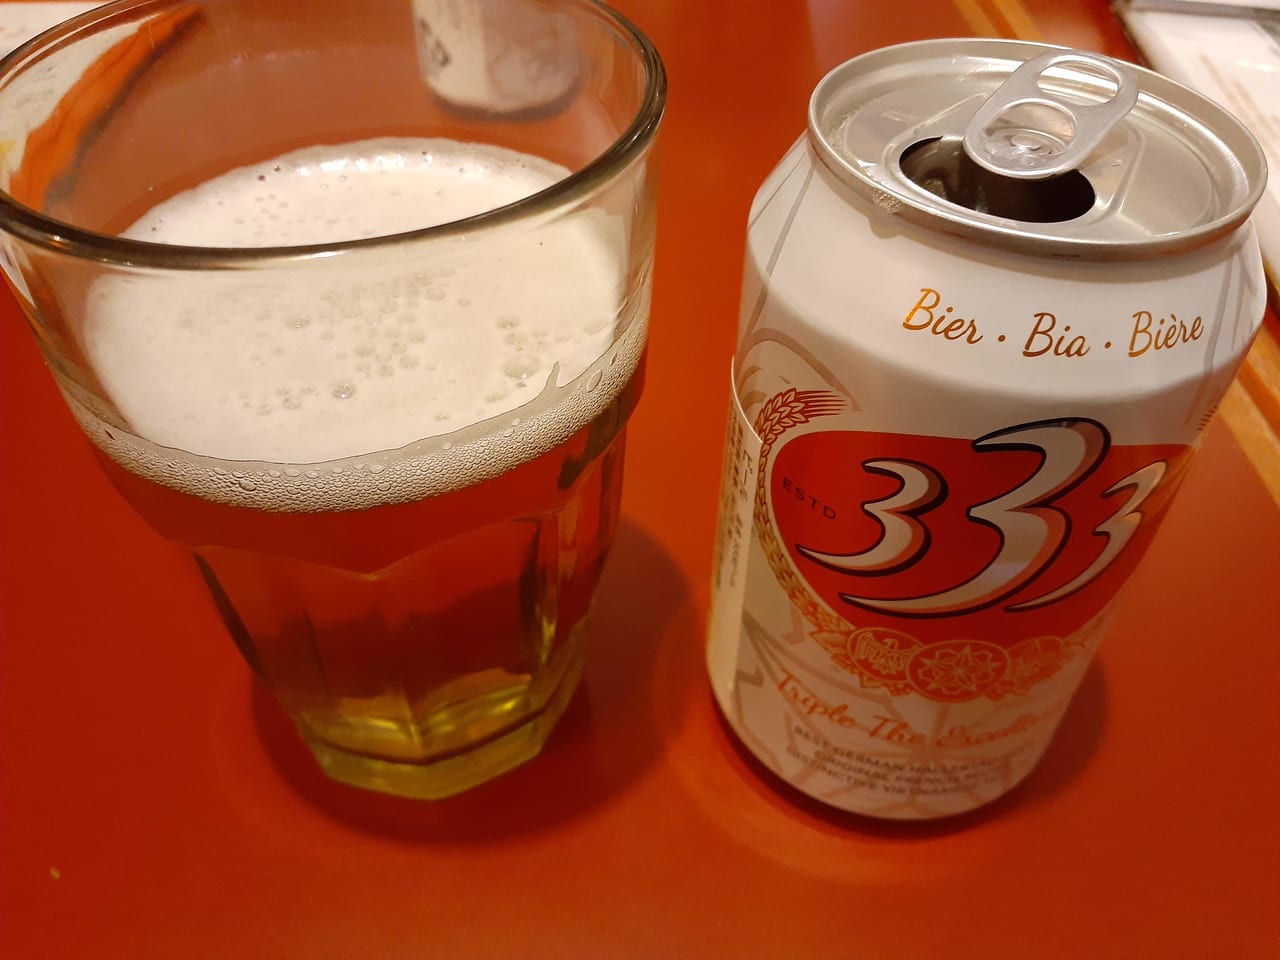 ベトナムビール333です。